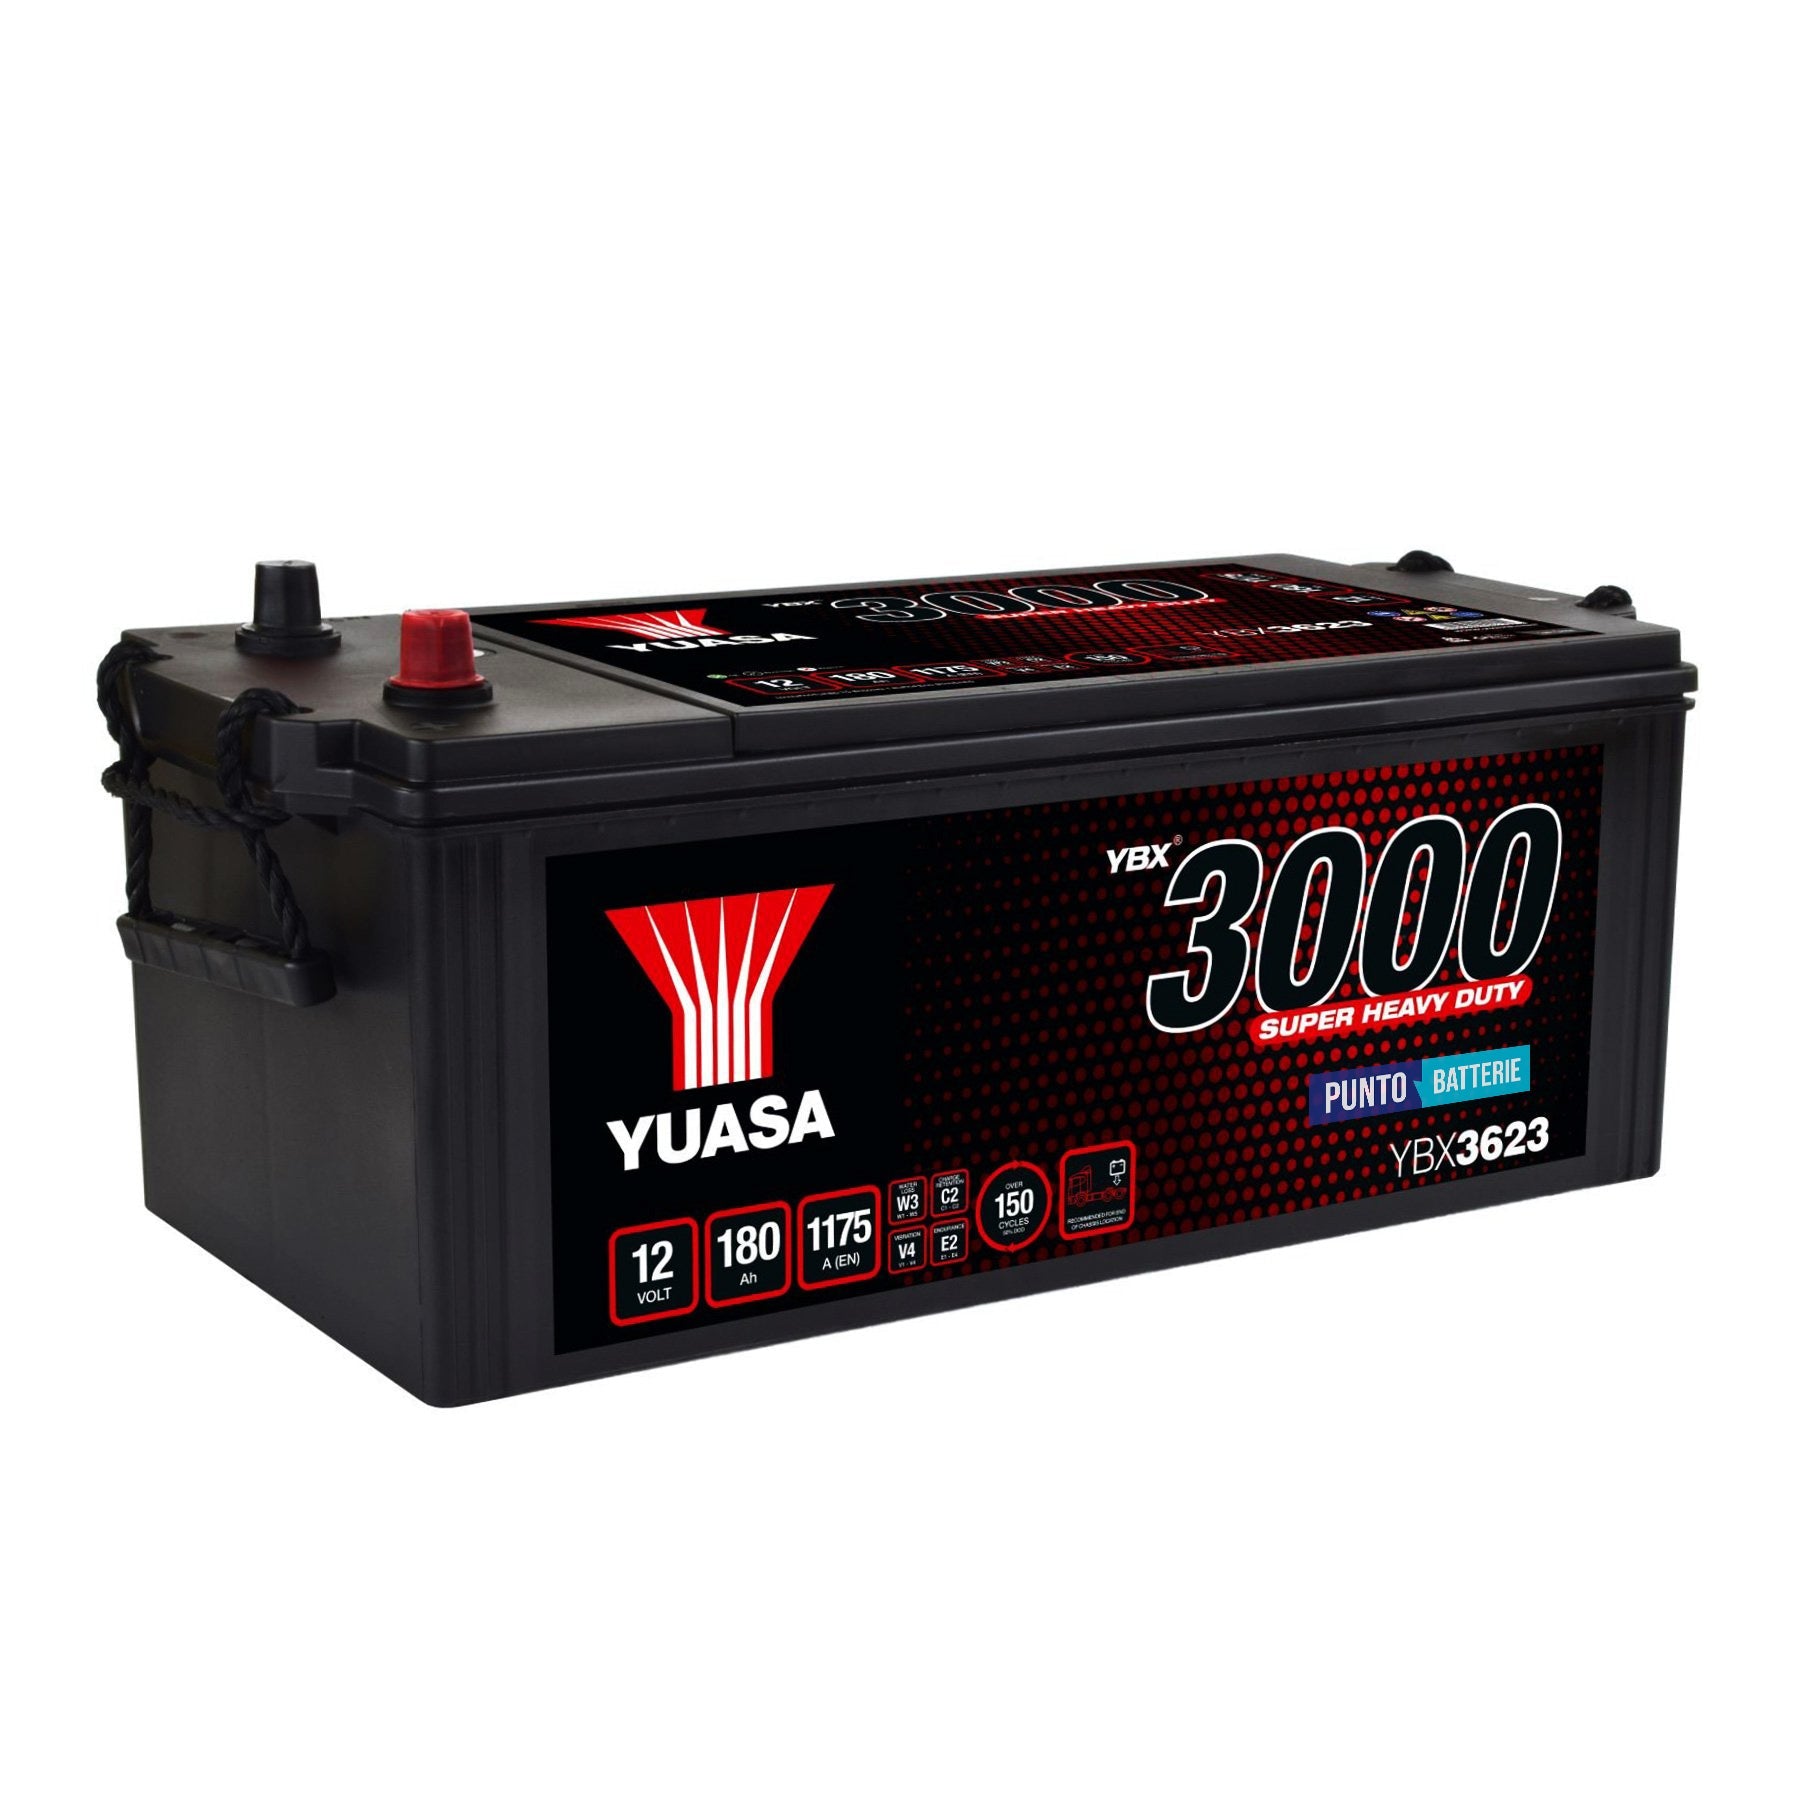 Batteria originale Yuasa YBX3000 YBX3623, dimensioni 511 x 222 x 215, polo positivo a destra, 12 volt, 180 amperora, 1175 ampere. Batteria per camion e veicoli pesanti.